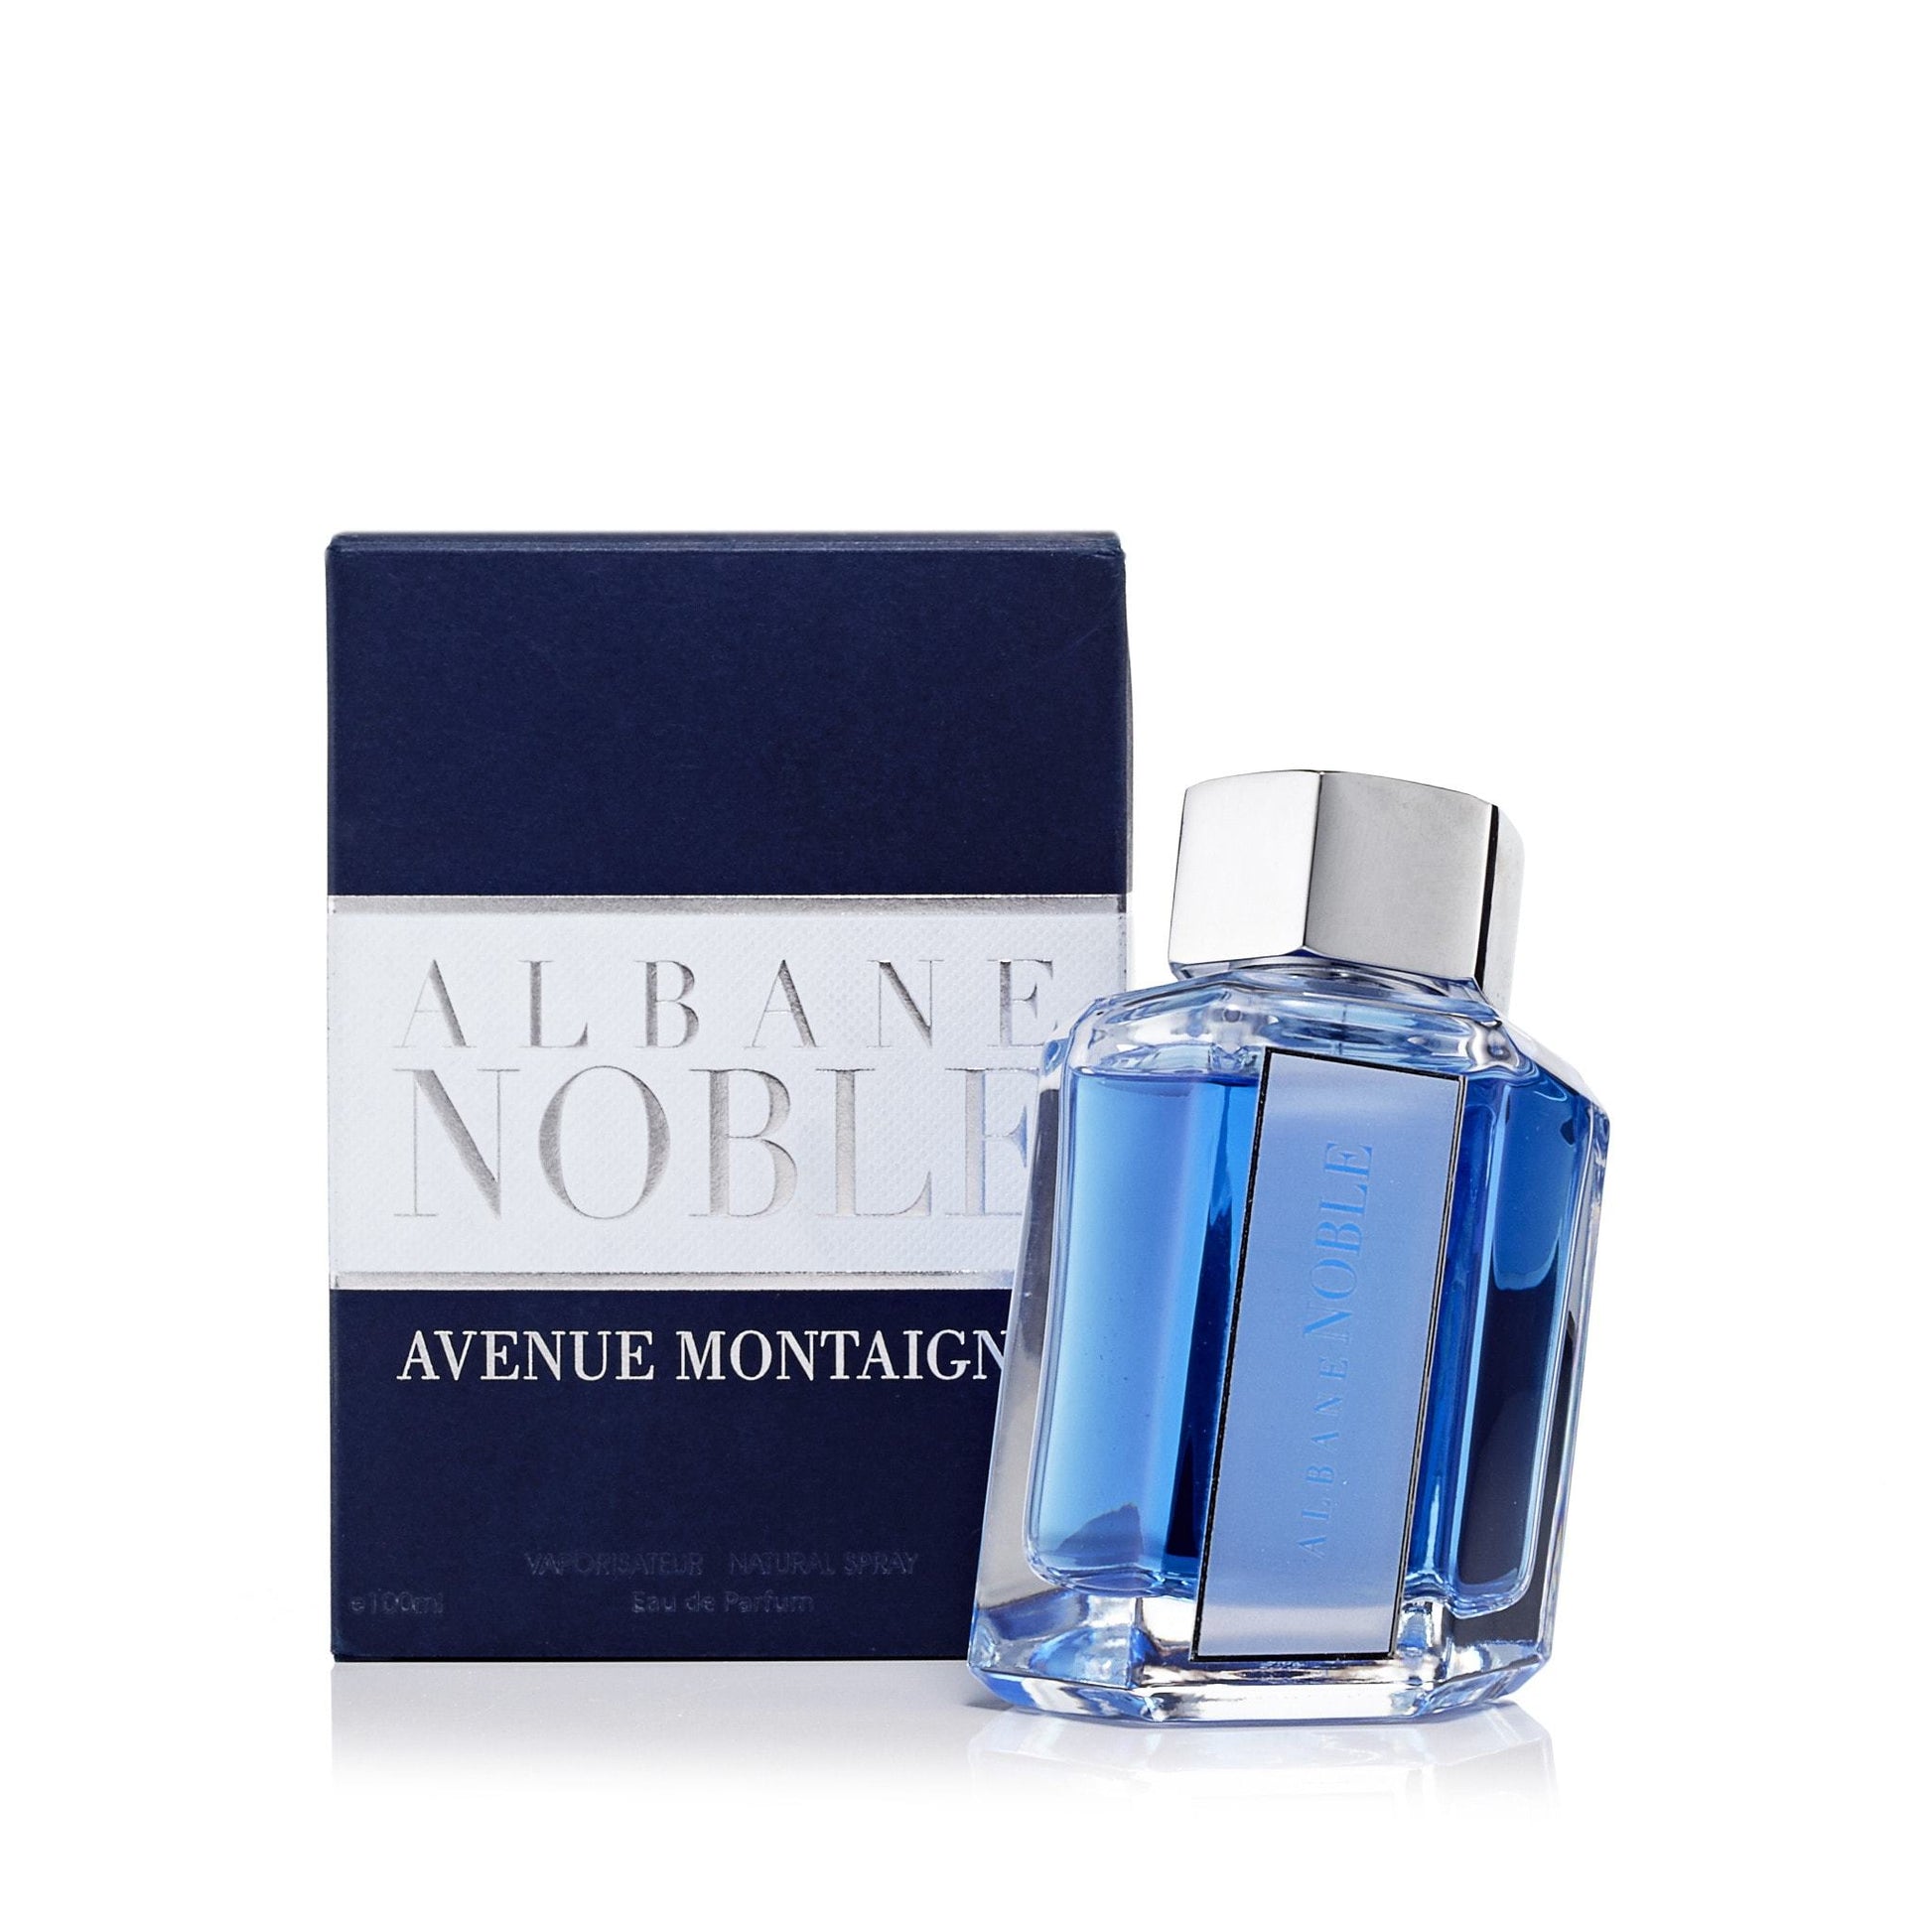 Avenue Montaigne Eau de Parfum Spray for Men by Albane Noble, Product image 2